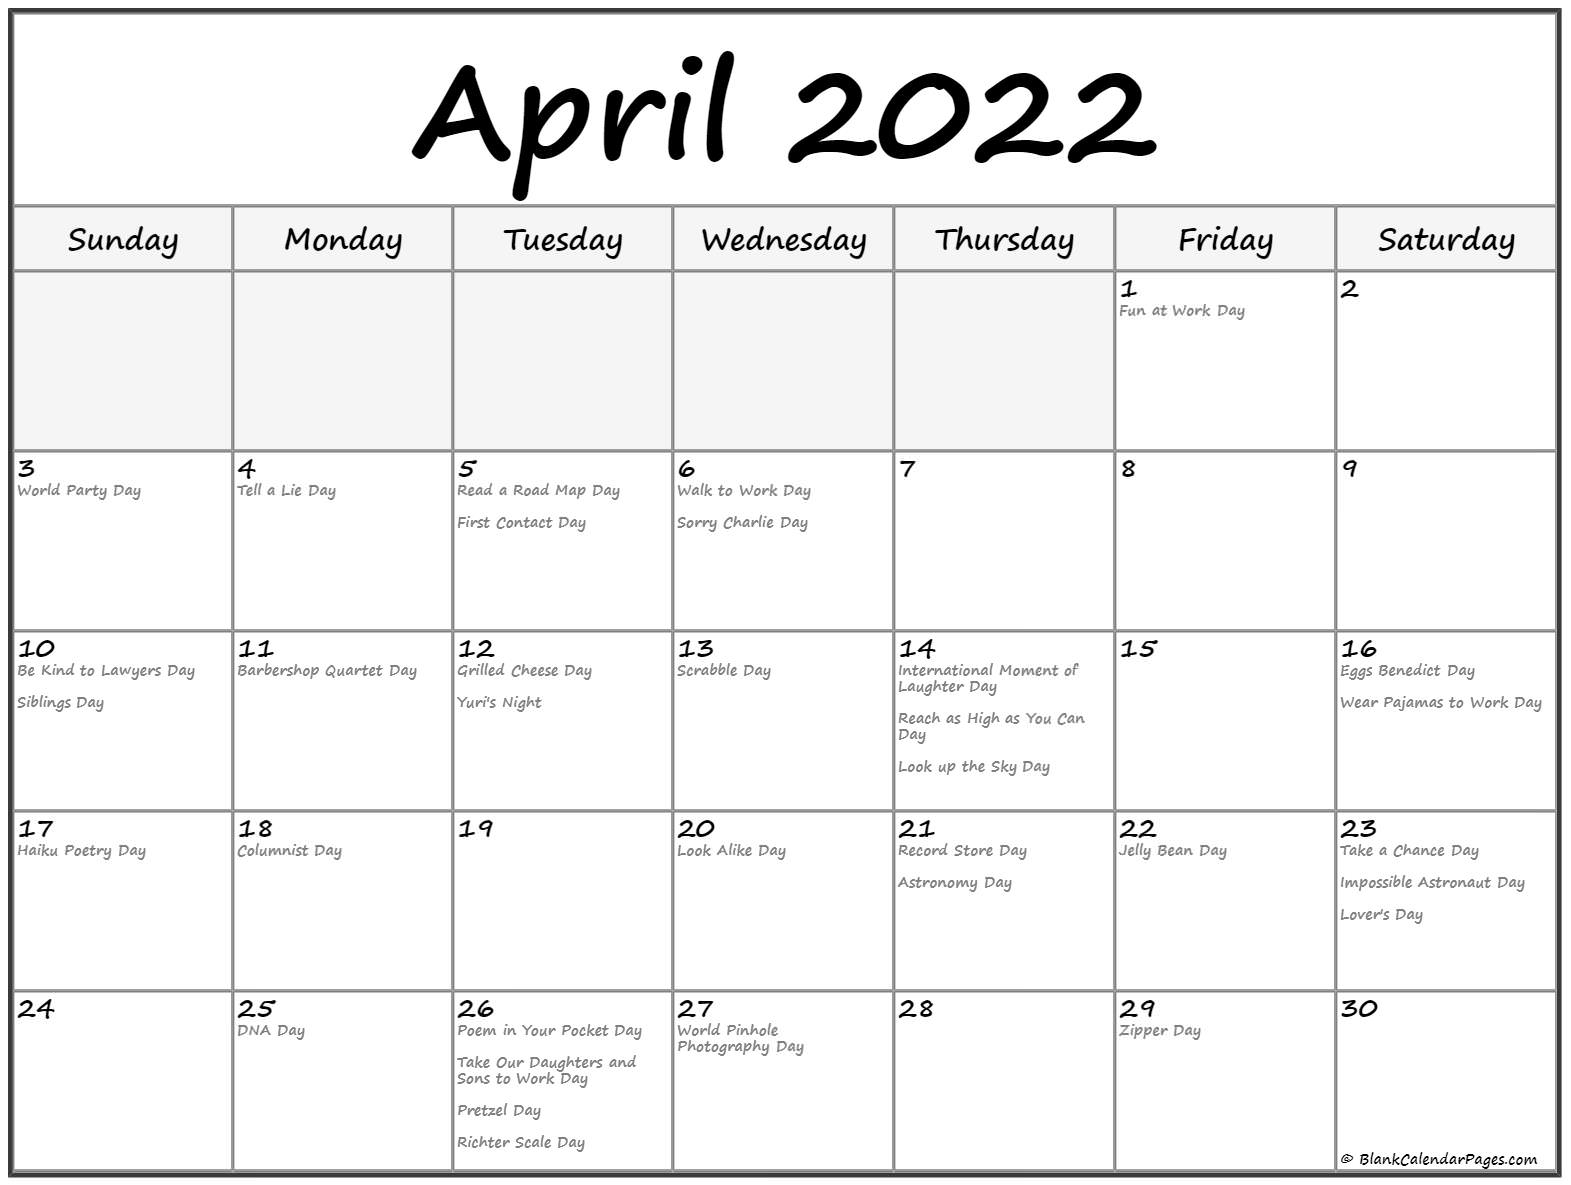 Get Bengali Calendar 2022 April